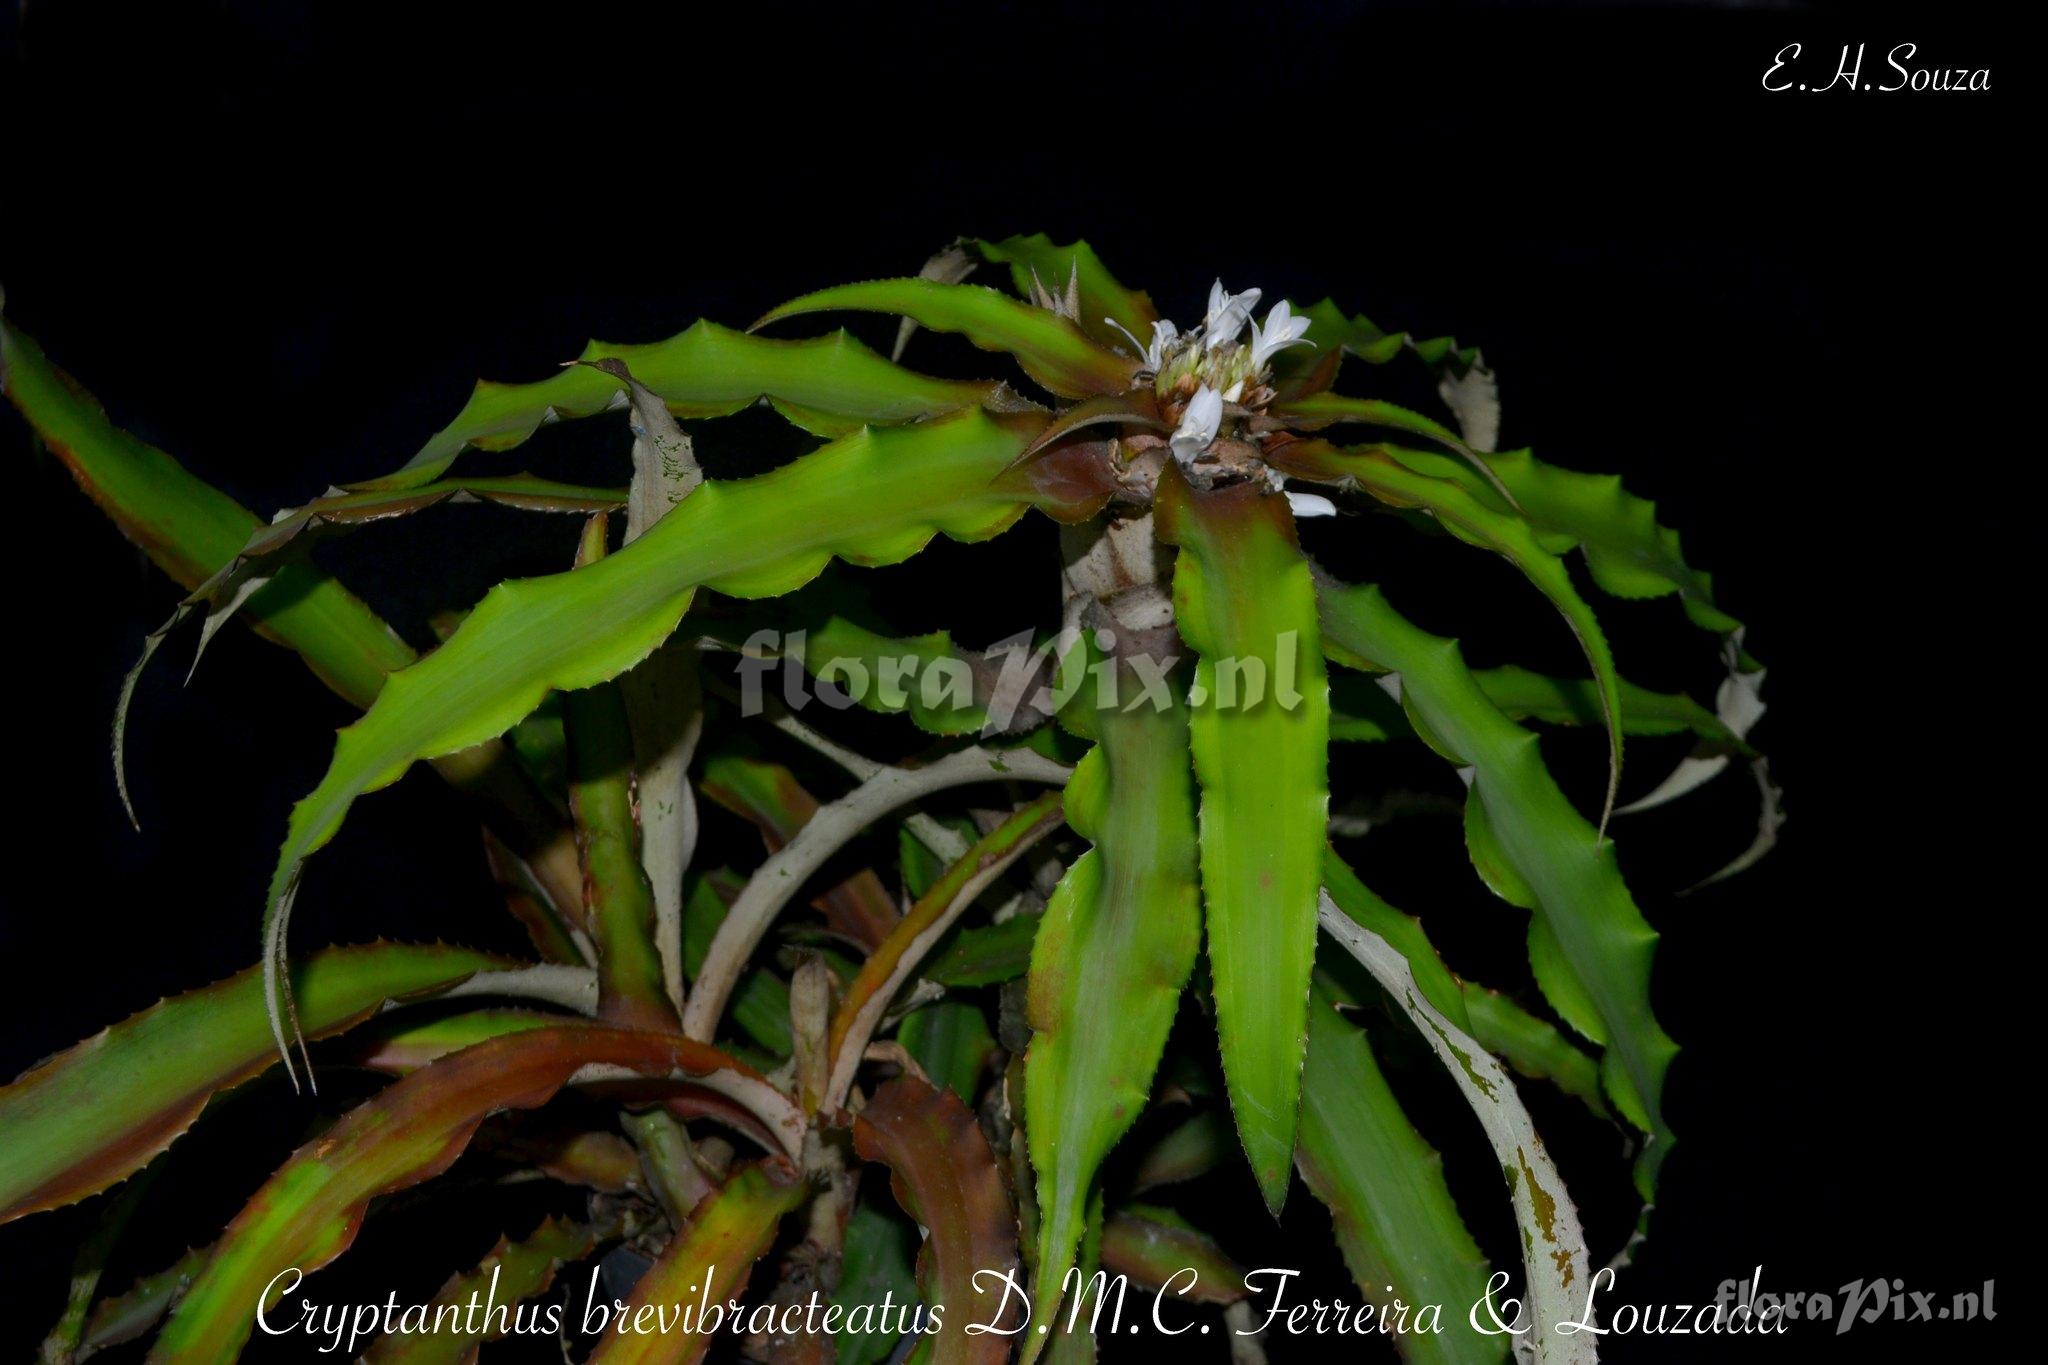 Cryptanthus brevibracteatus